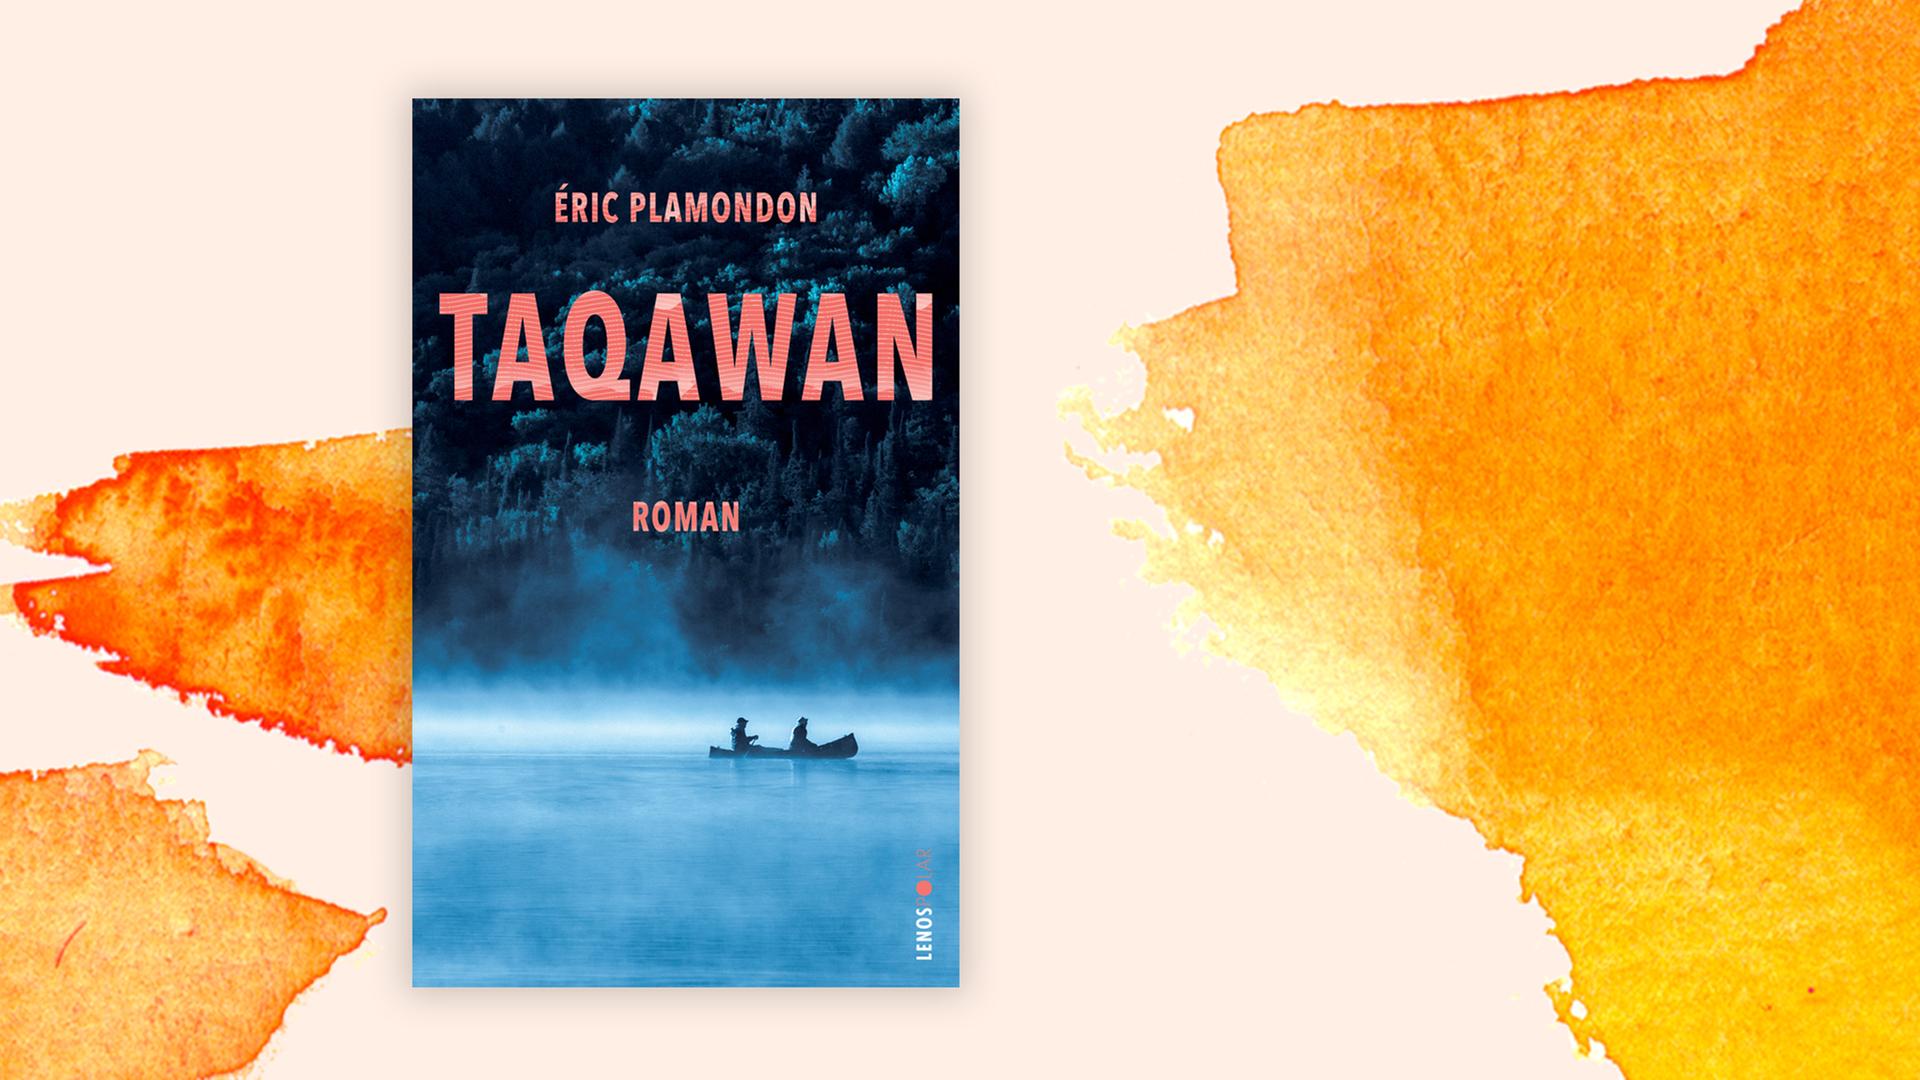 Das Cover zeigt zwei Menschen in einem Kanu auf einem See. Es ist nebelig.